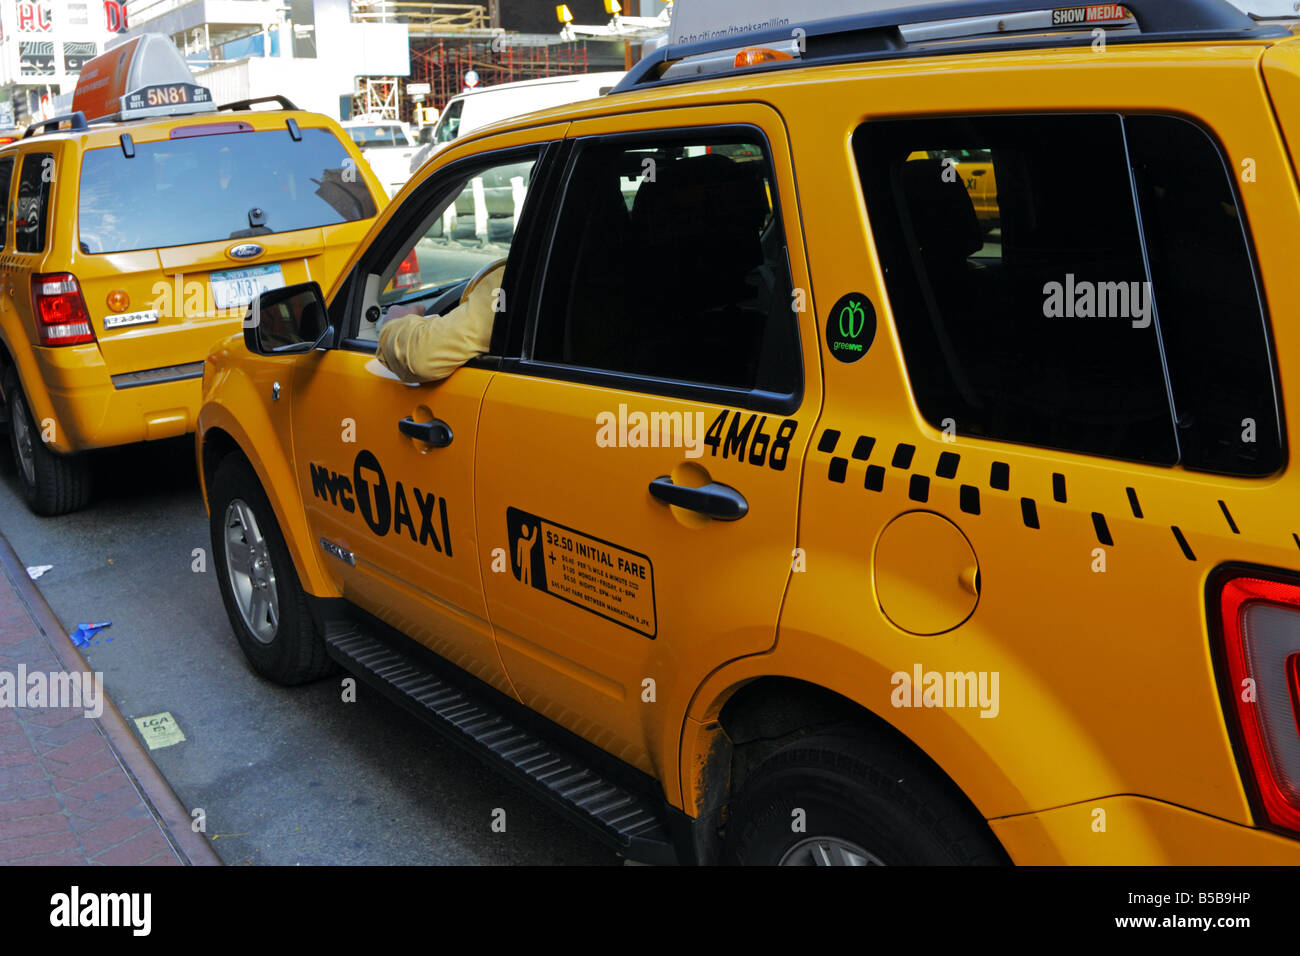 Yellow Cab hybride respectueux de l'environnement dans la ville de New York Banque D'Images